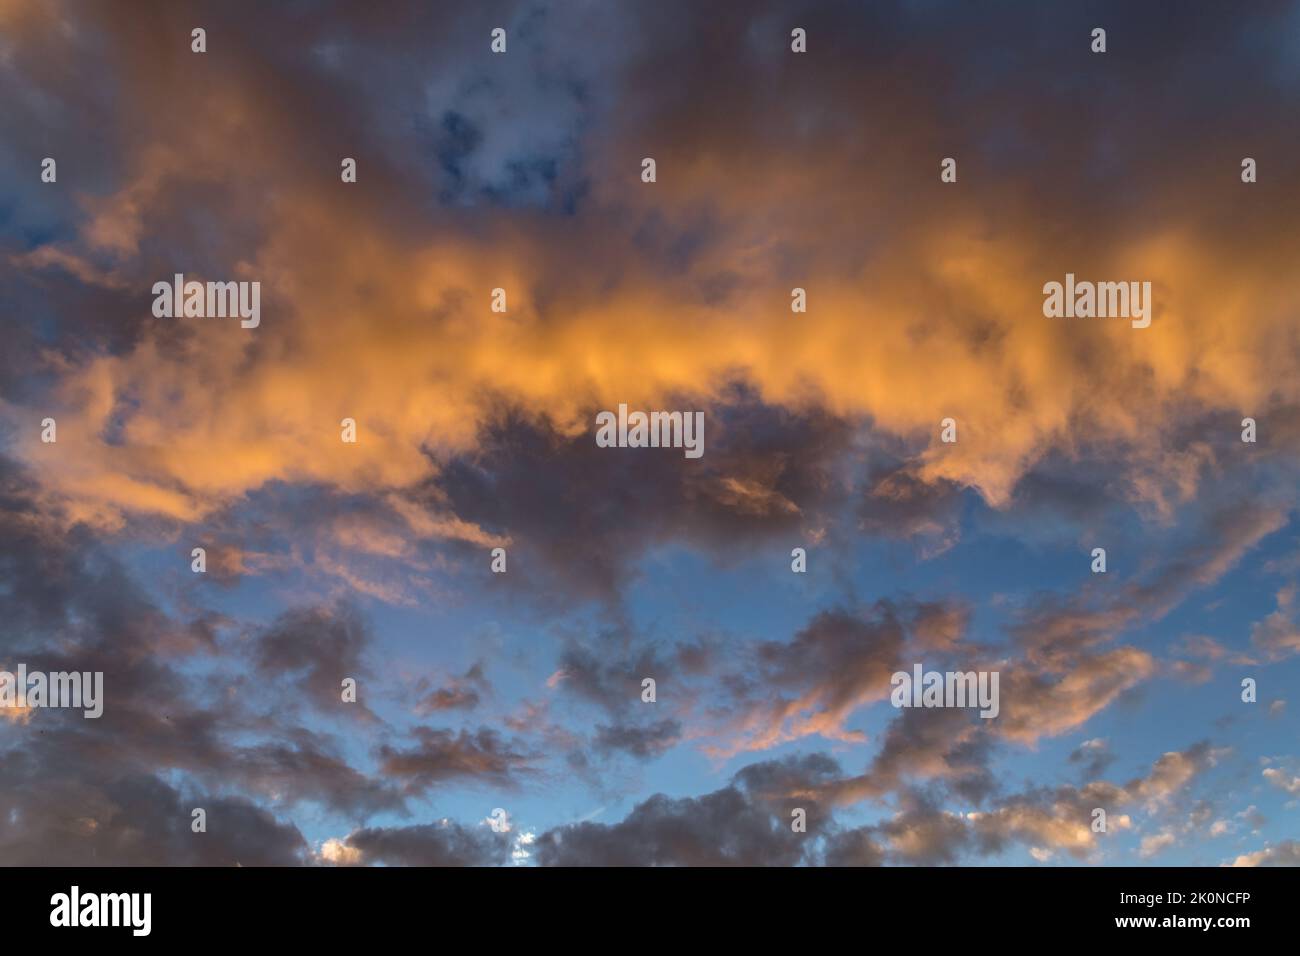 Sky with cloudy sunset - Vue d'un ciel nuageux lors d'un coucher de soleil Stock Photo